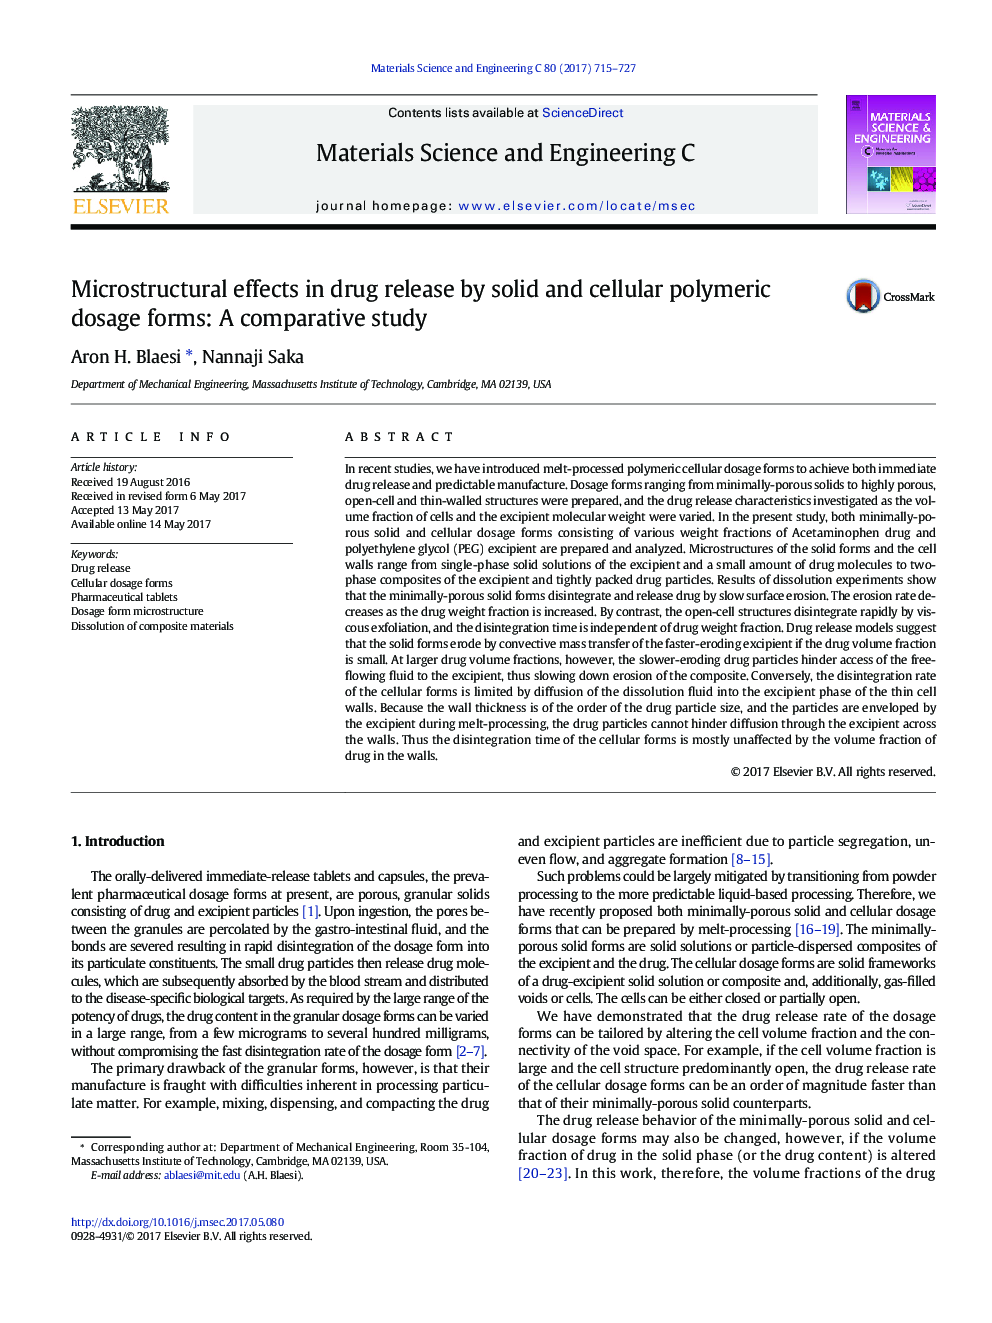 اثرات میکرو سازگار در آزادی دارو توسط فرمهای دوزهای پلیمری جامد و سلولی: یک مطالعه مقایسه ای 